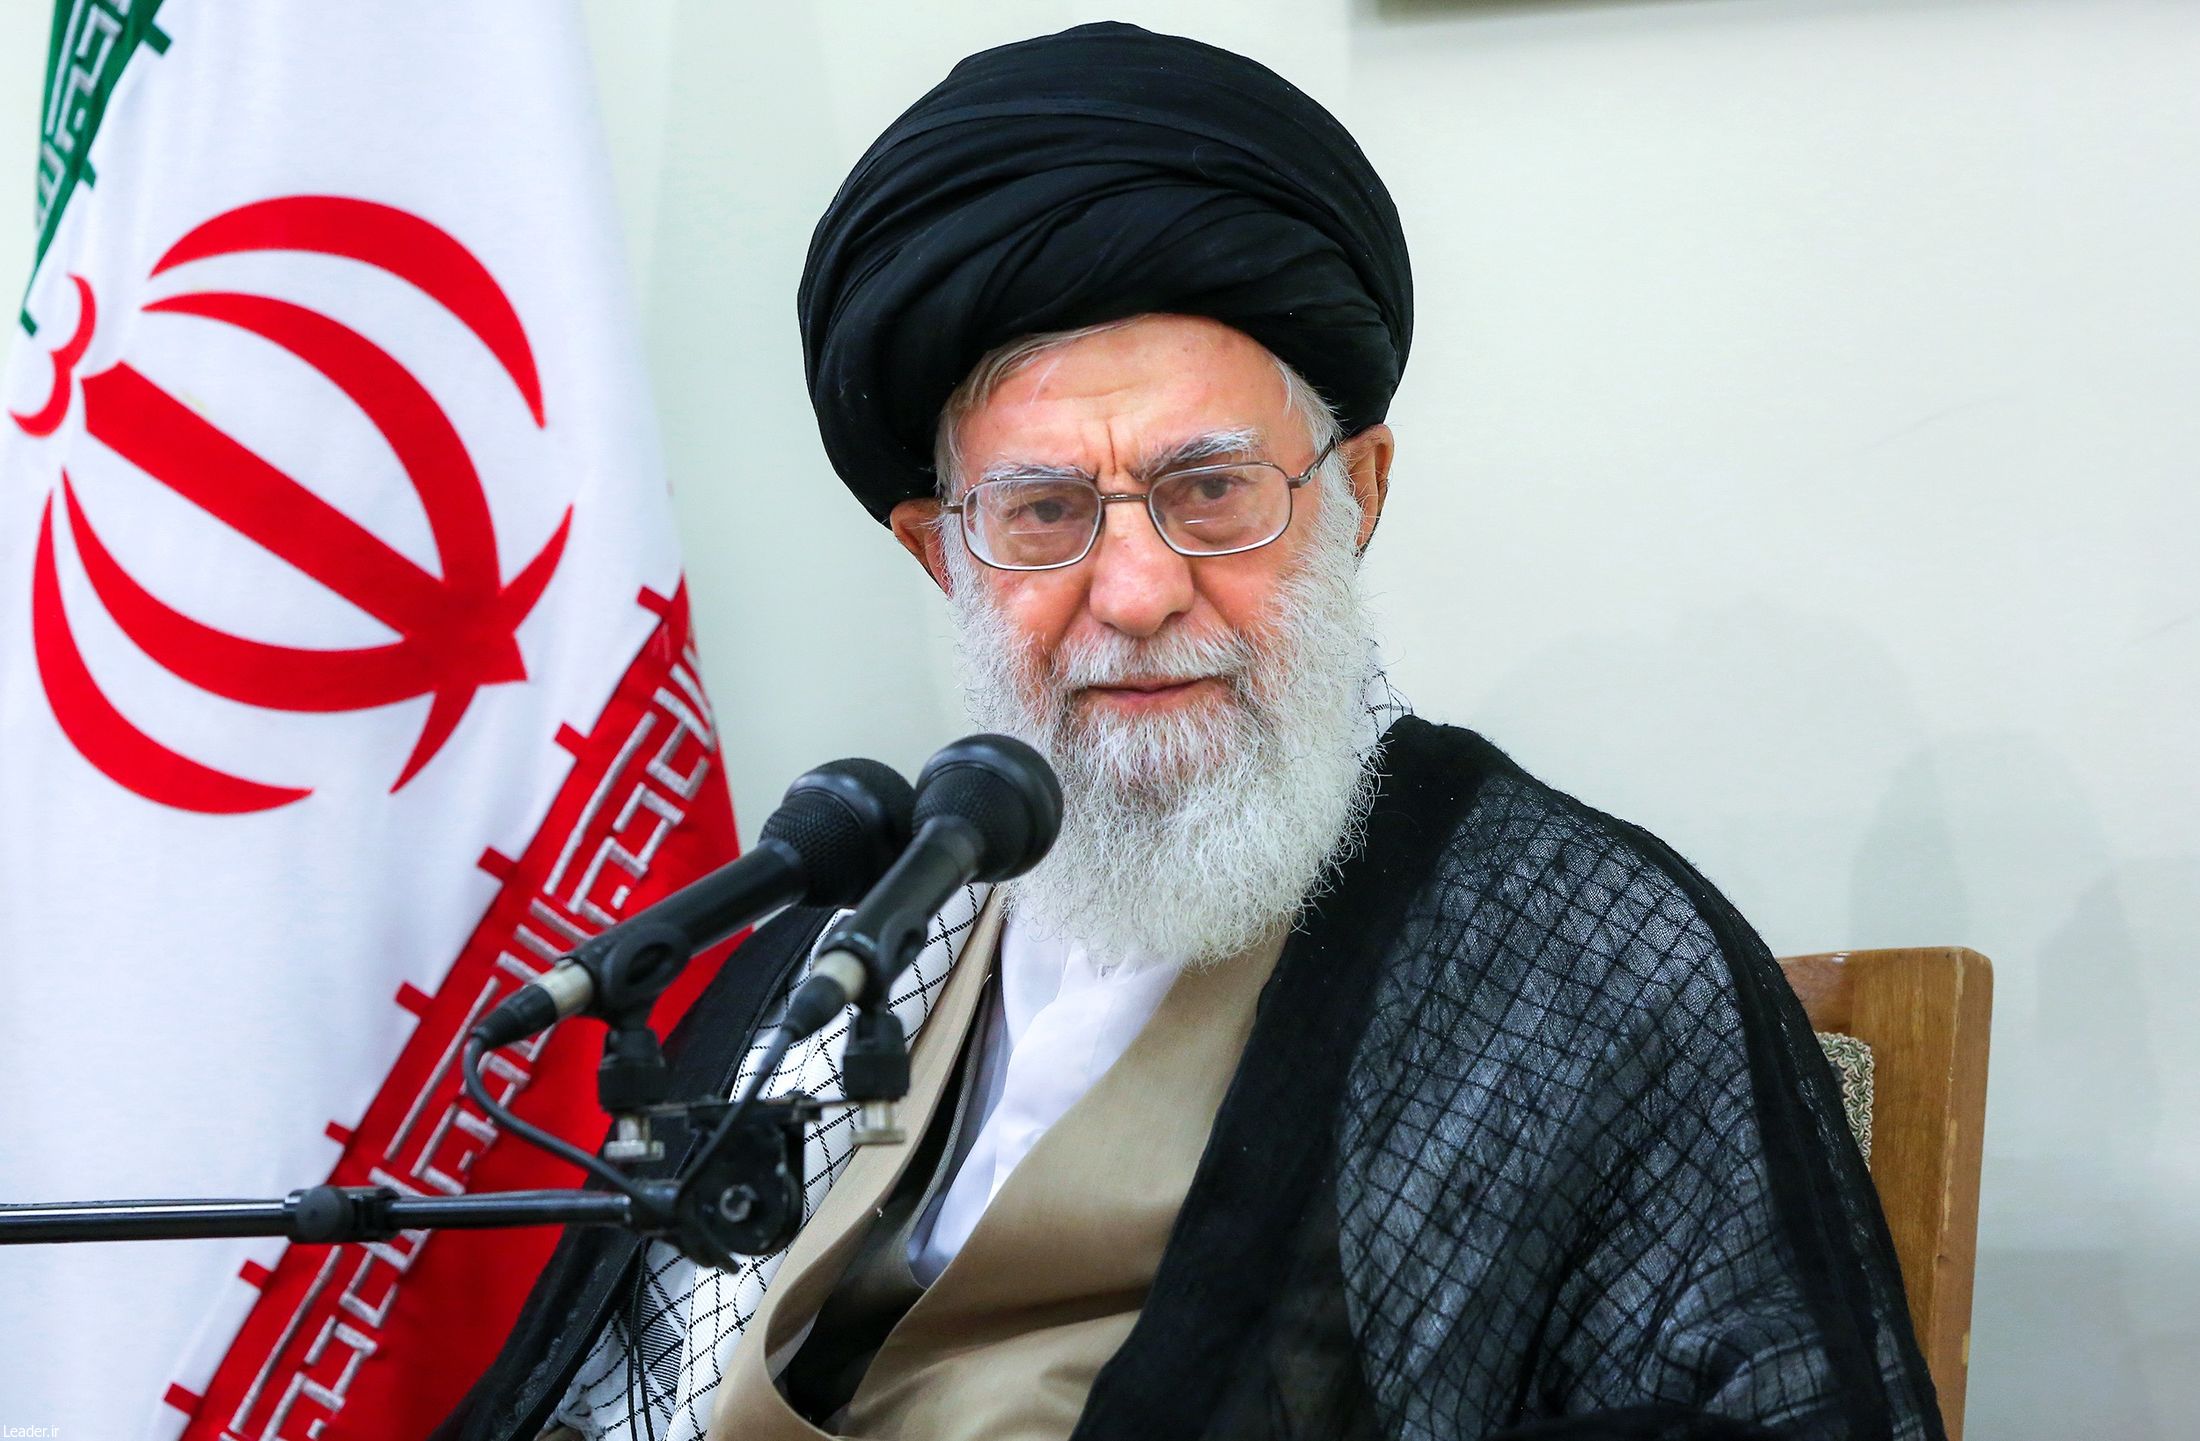  الهدف من الحظر هو التضييق على إيران الإسلاميّة لإجبارها على اتّباع الاستكبار